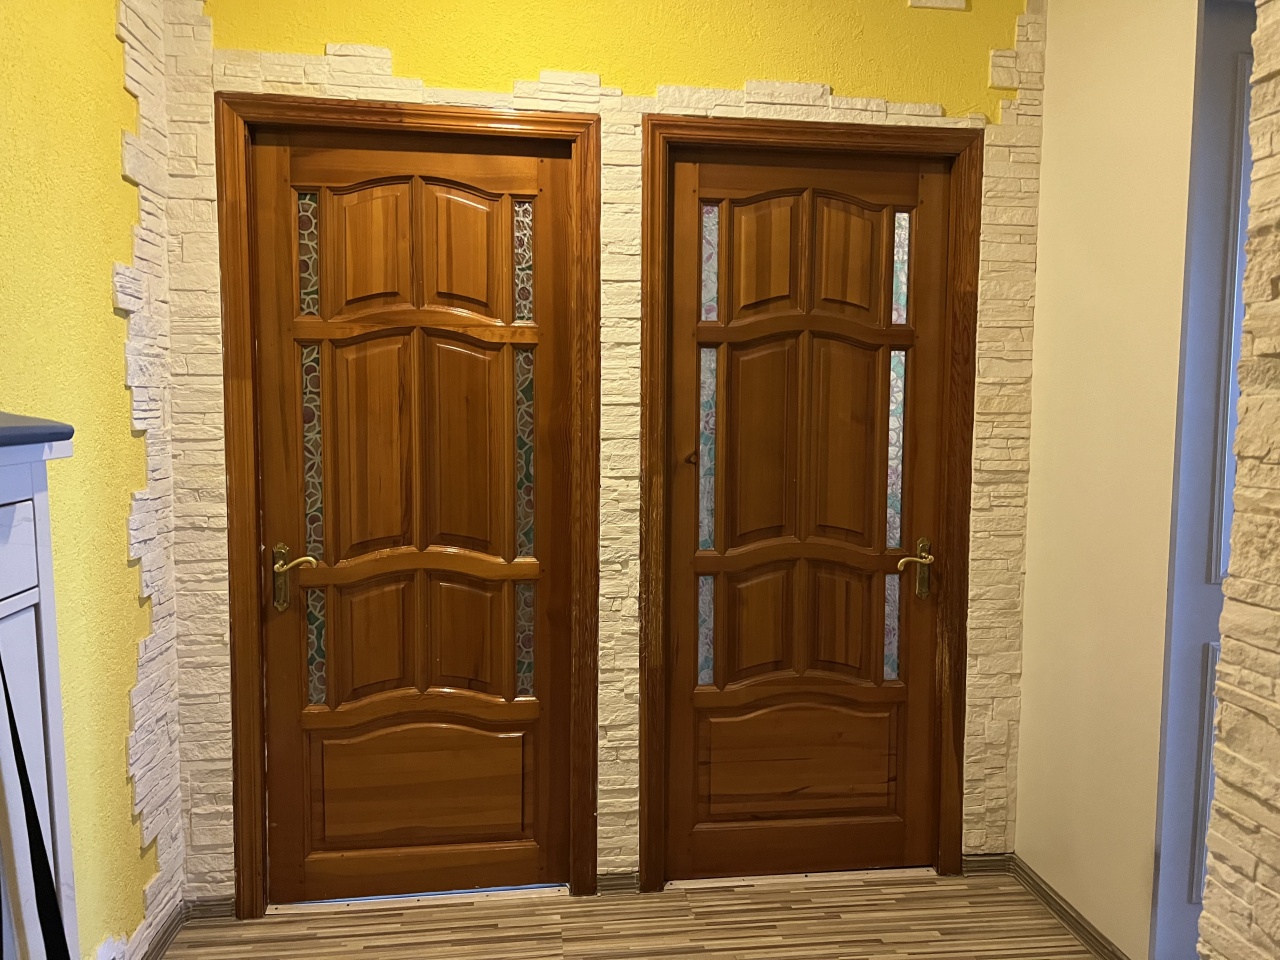 Продается 2- комнатная квартира в г. Мытищи ул. Новомытищинский пр-кт расположенная на 11/17 этажного дома.